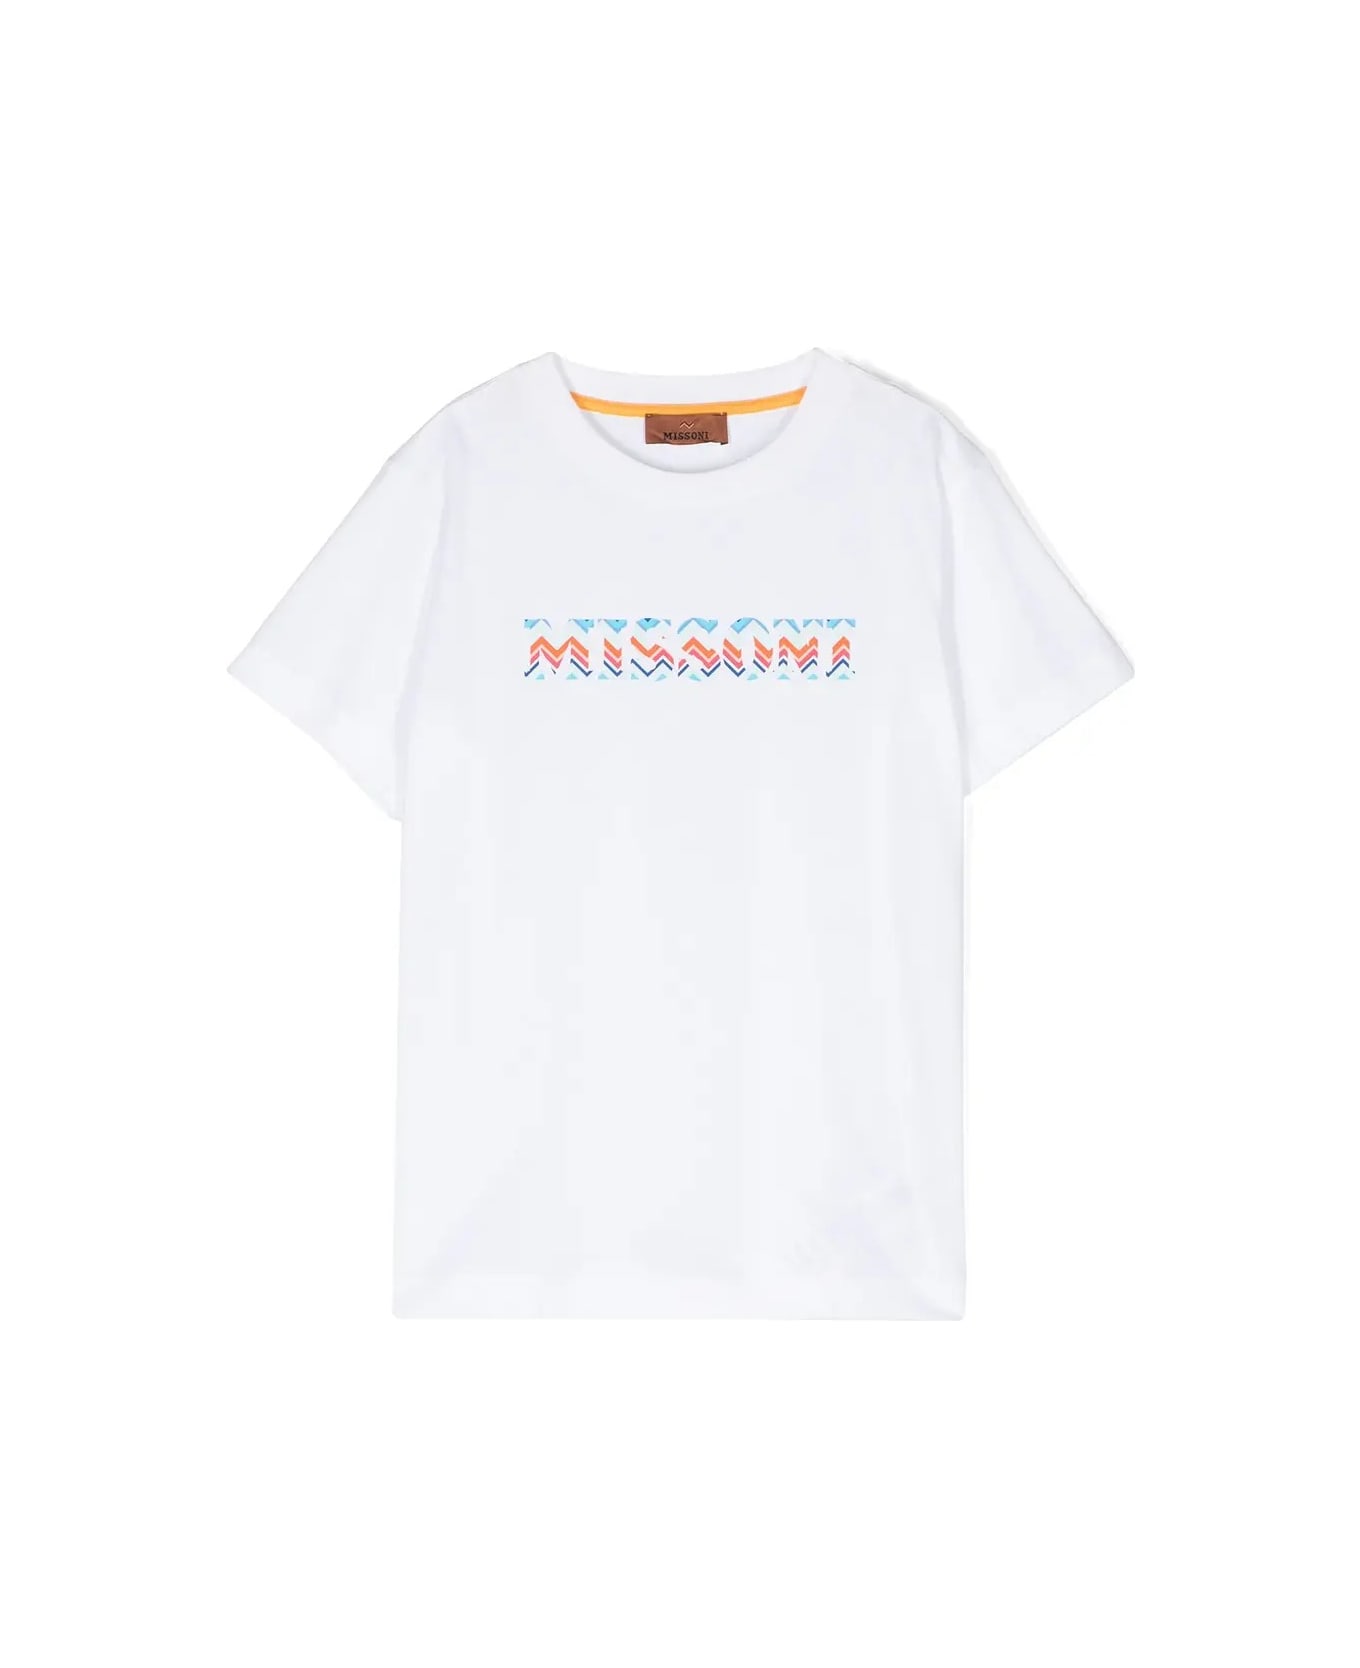 Missoni Kids White T-shirt With Chevron Logo - White